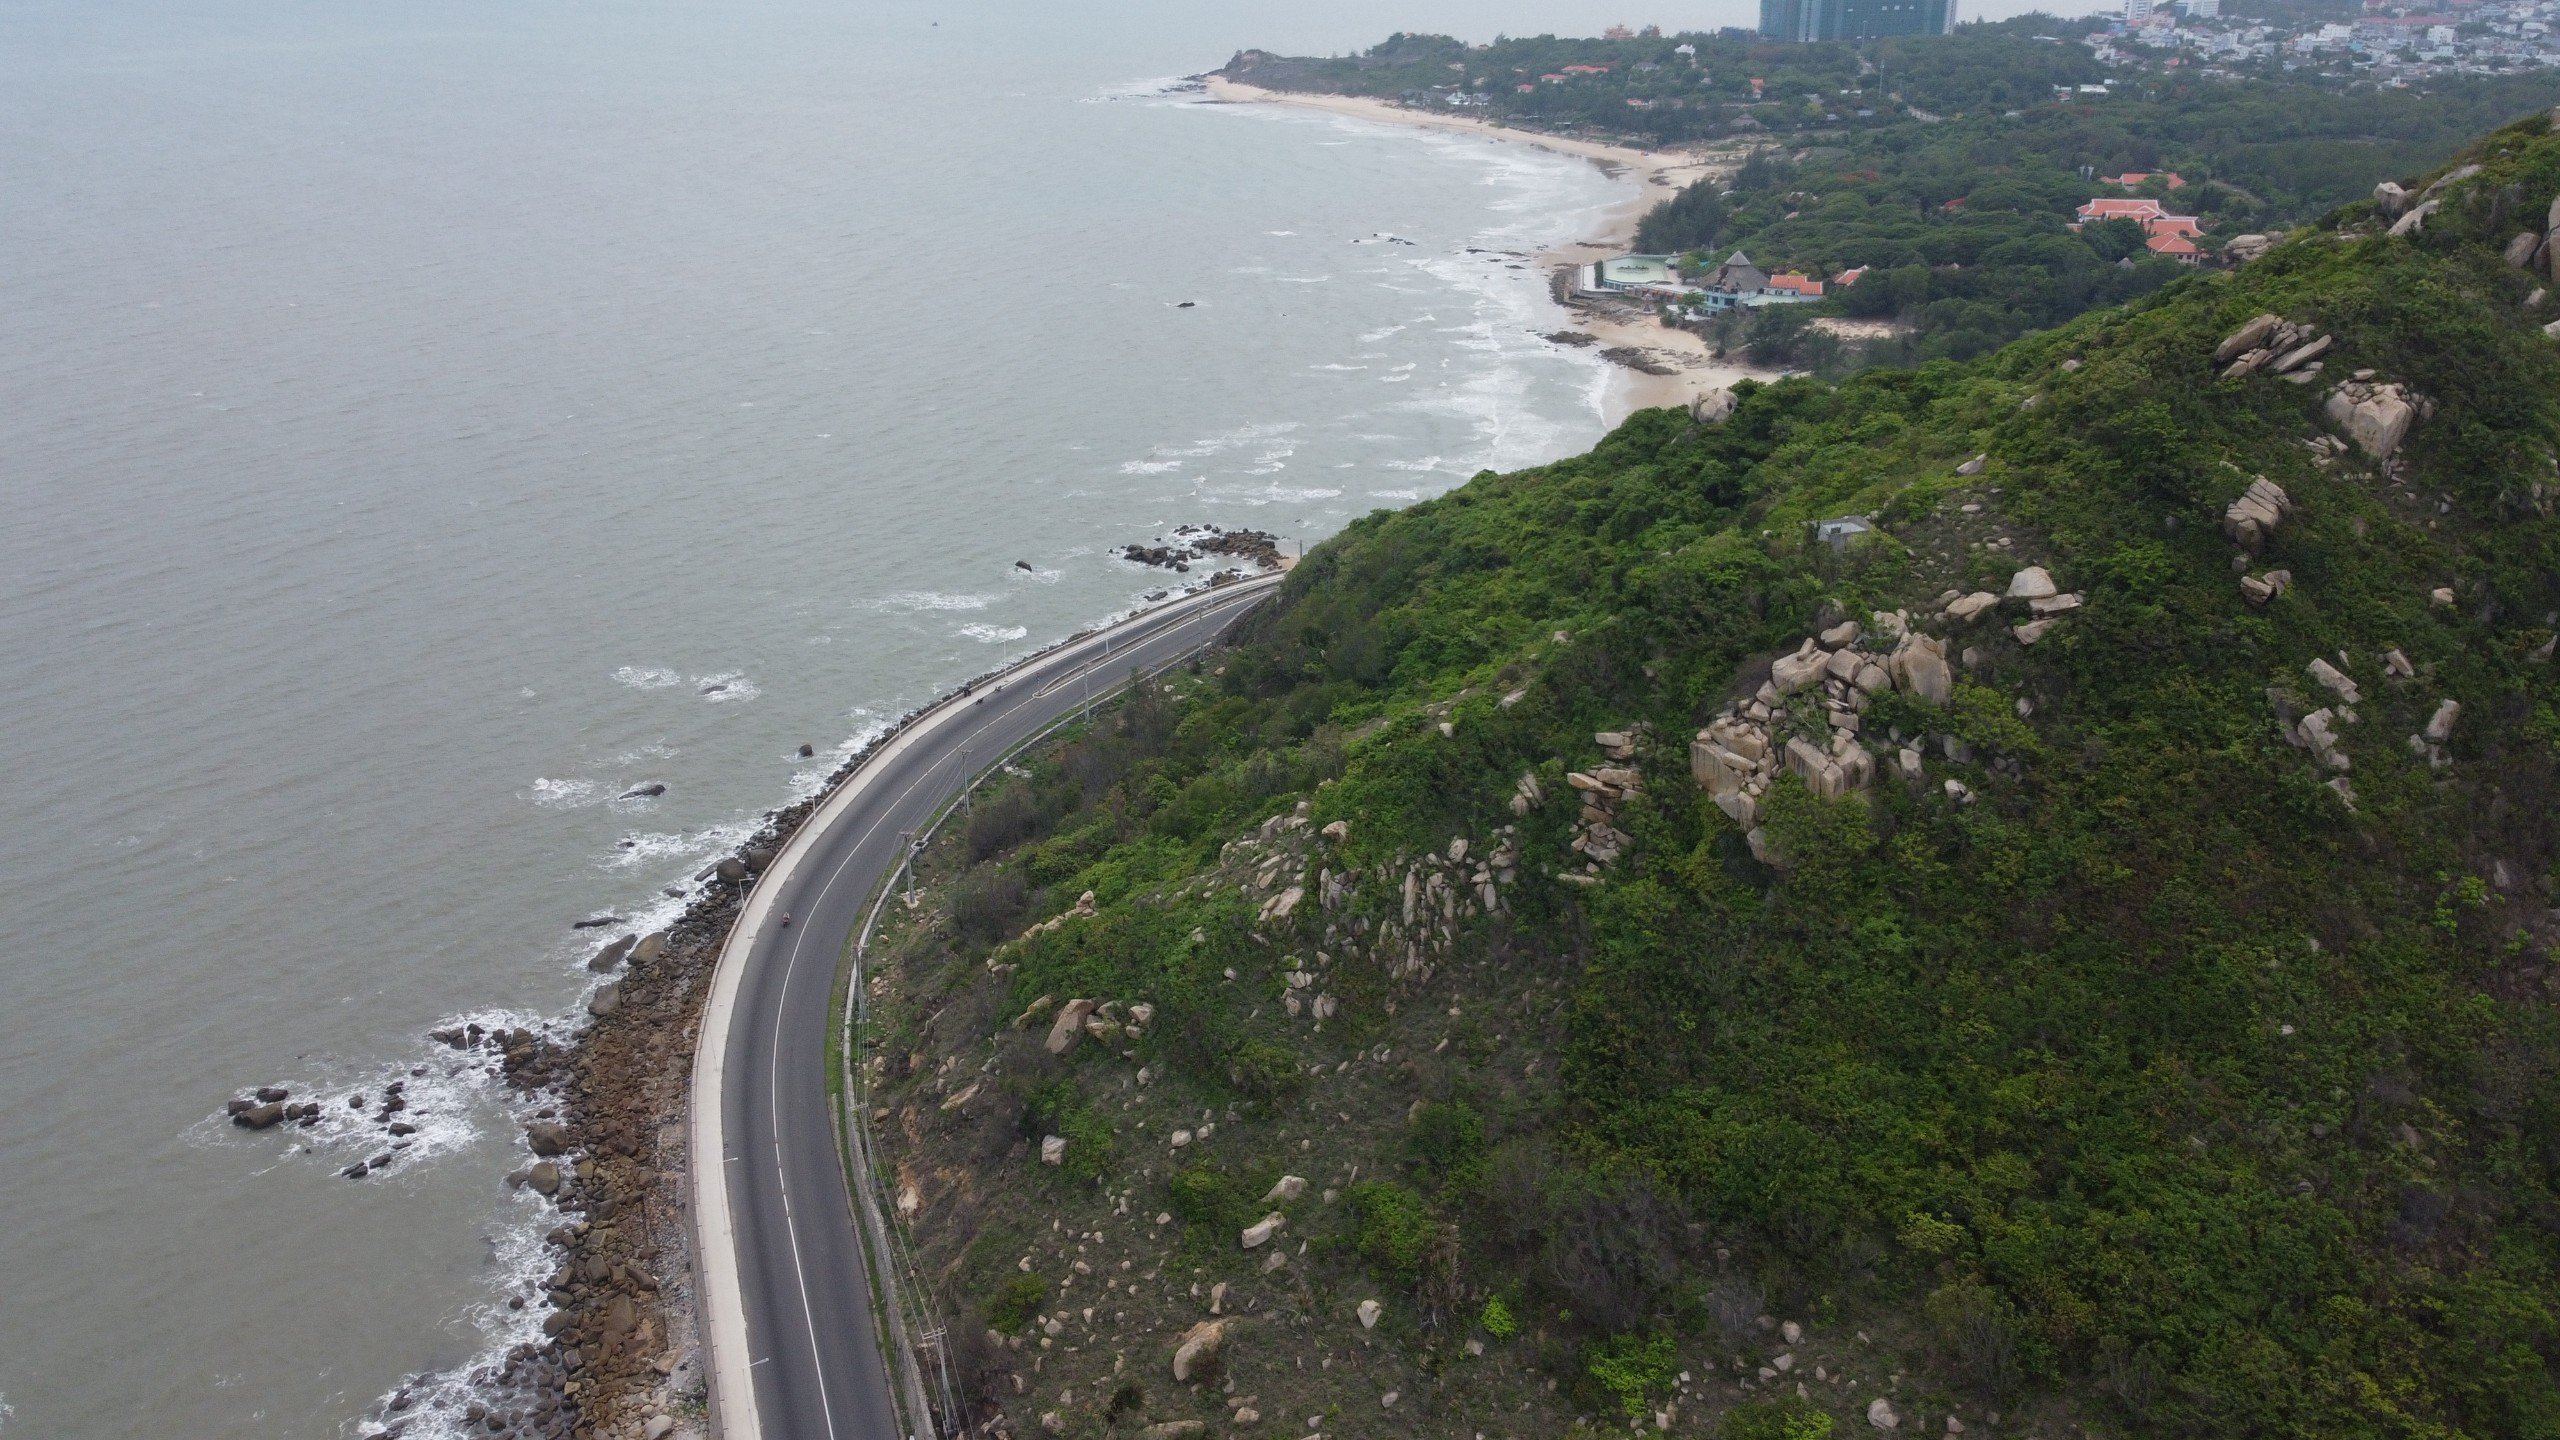  Dự án nâng cấp, mở rộng đường ven biển Vũng Tàu-Bình không lâu nữa sẽ hoàn thành, kết nối đồng bộ với các dự án giao thông trọng điểm khác của vùng Đông Nam Bộ và của tỉnh. Con đường hứa hẹn tạo động lực bứt phá cho các địa phương và DN, nhất là trong lĩnh vực đô thị - du lịch, dịch vụ.